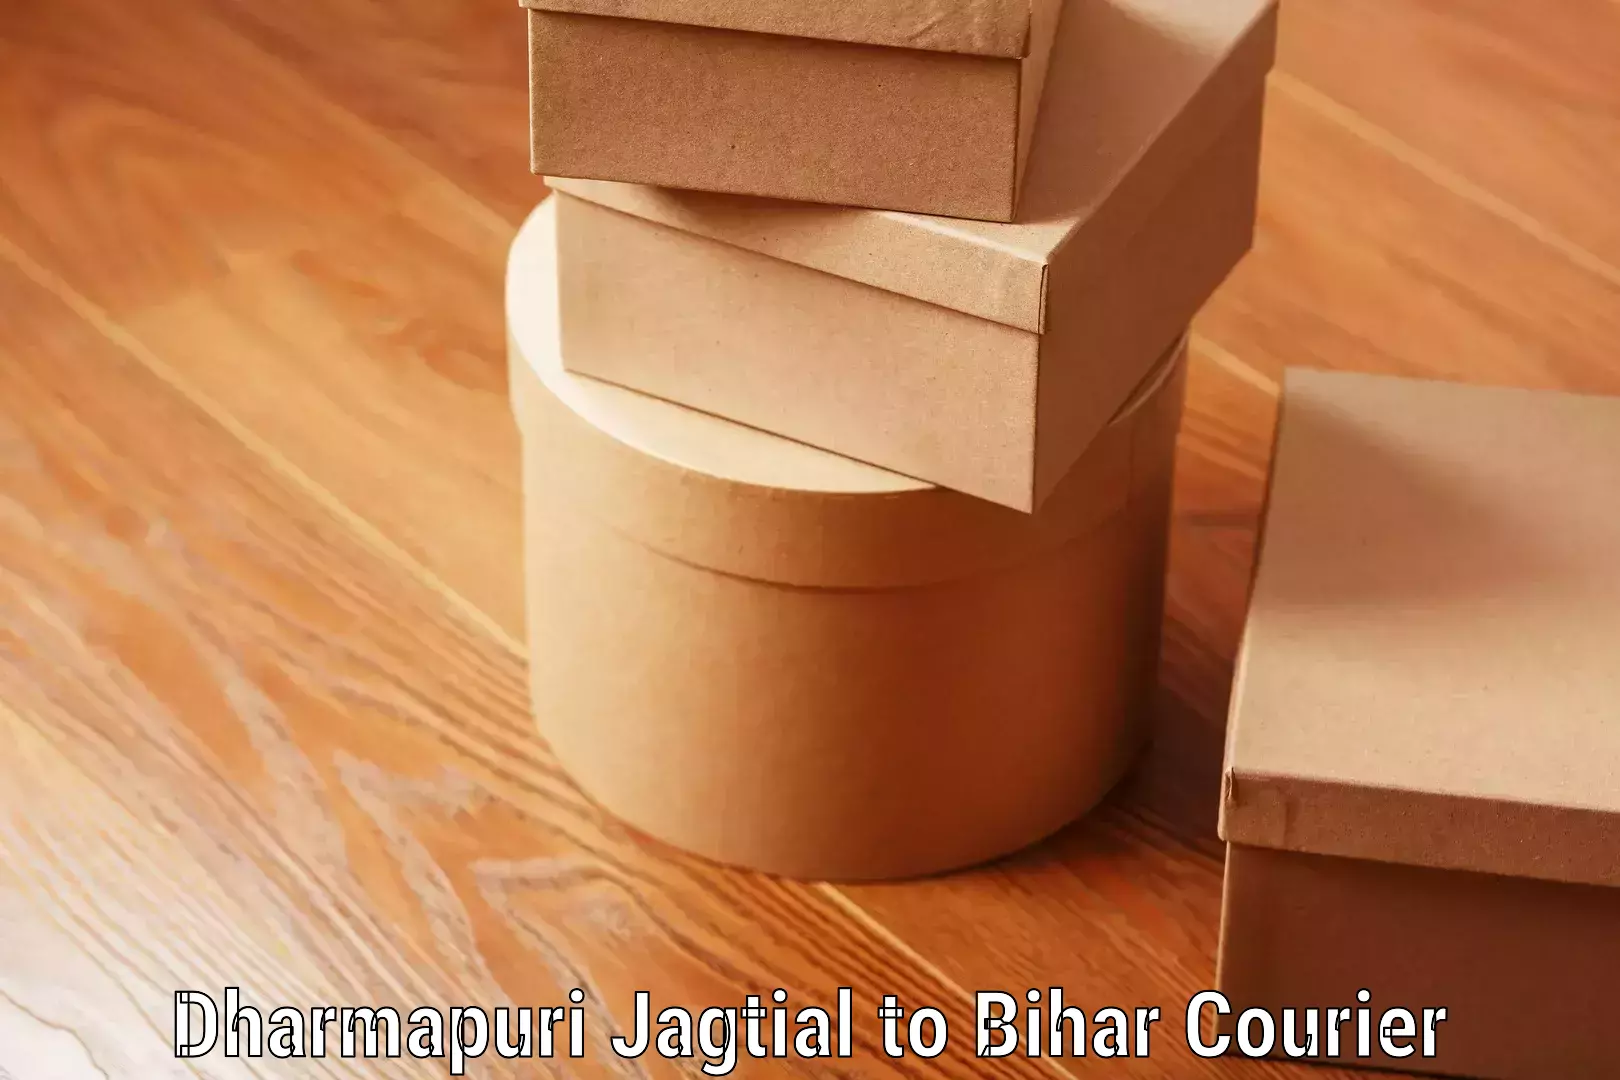 Global baggage shipping Dharmapuri Jagtial to Mojharia